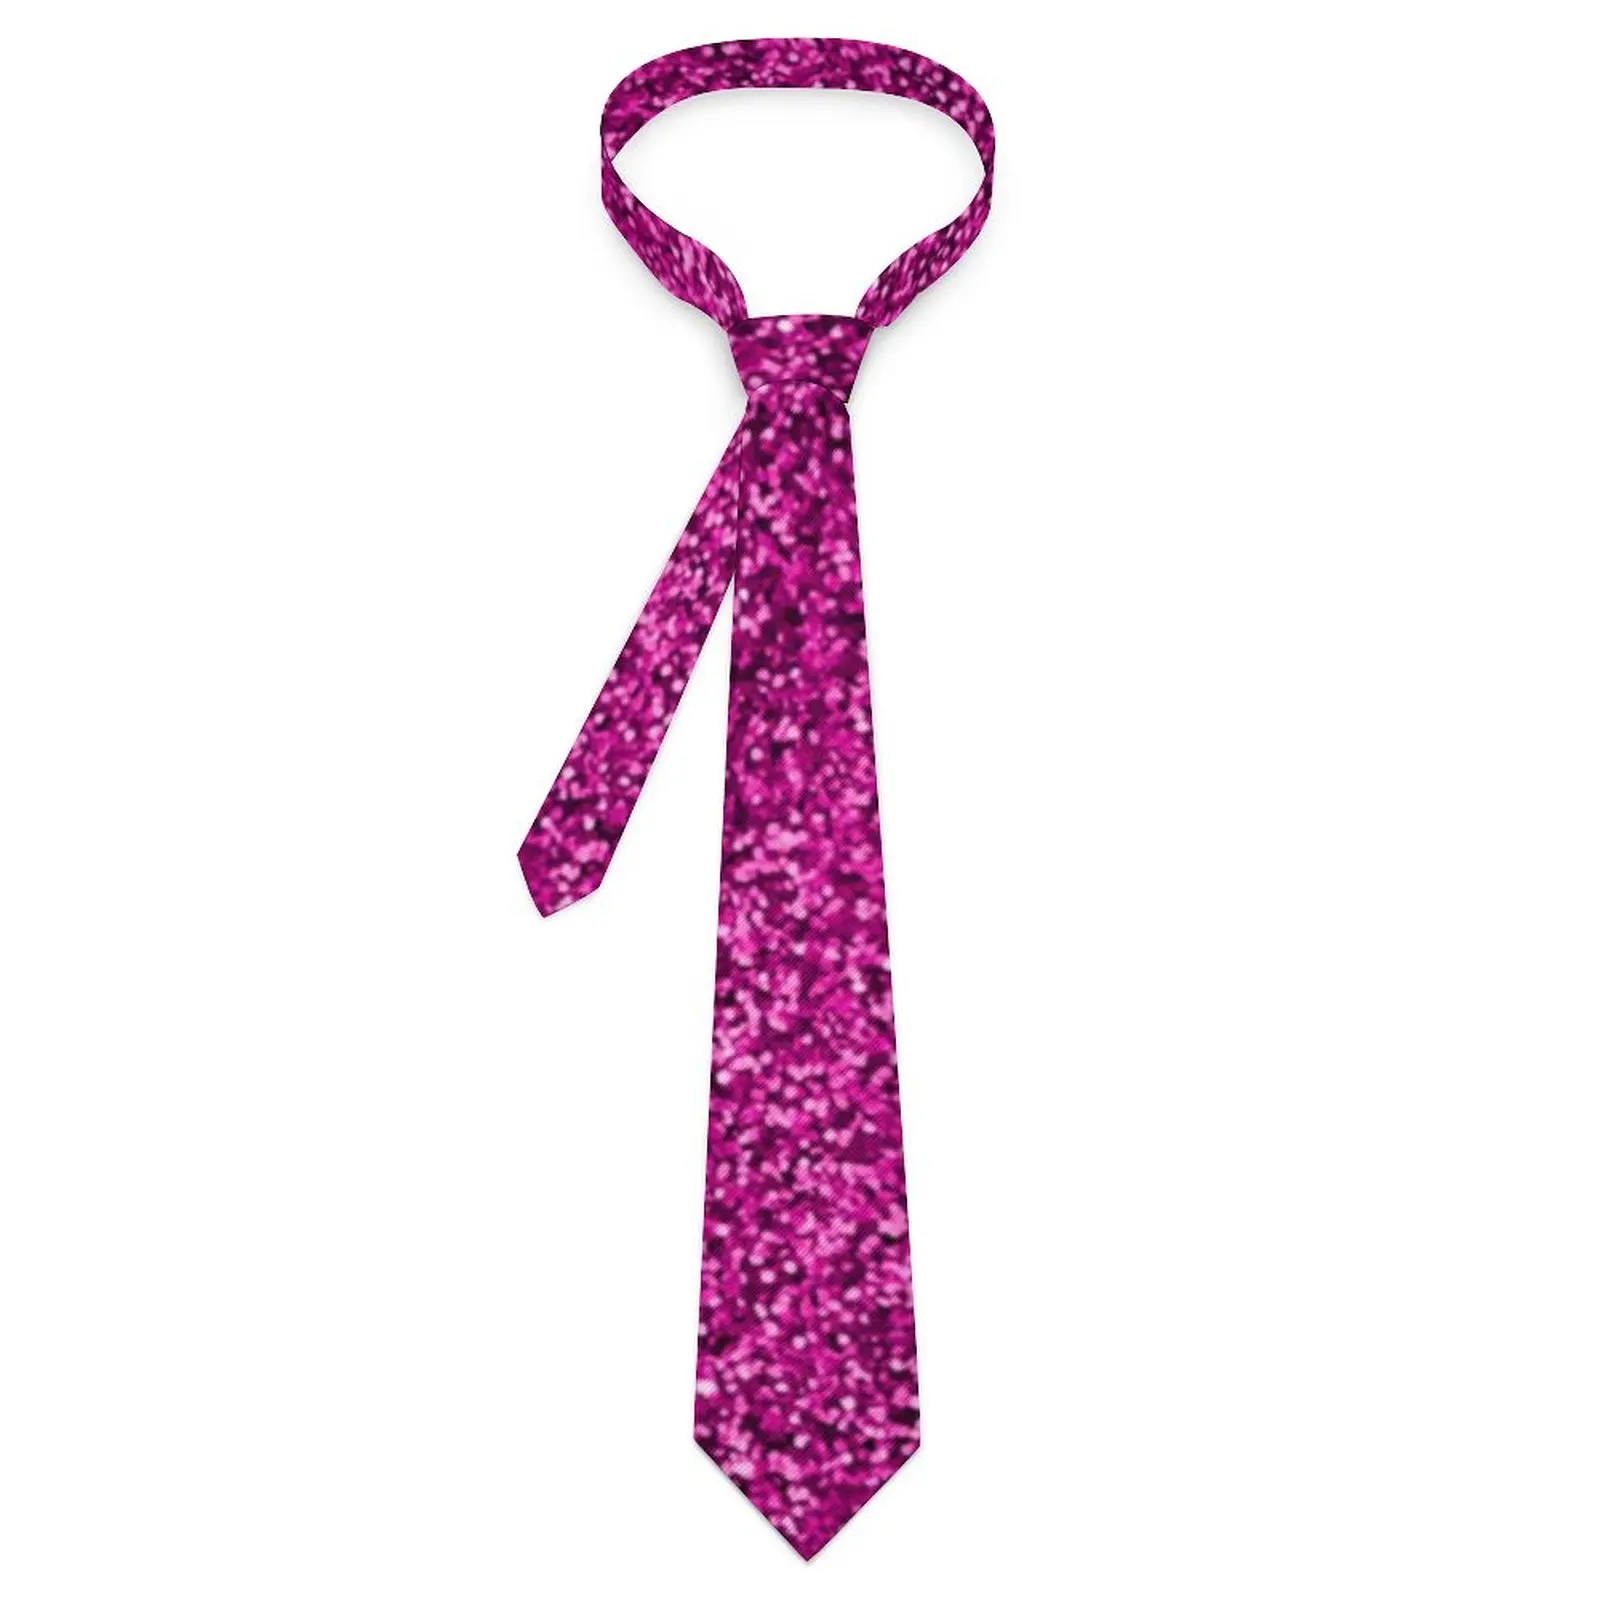 

Розовый галстук с блестками и принтом, текстурные блестящие Галстуки для свадебной вечеринки, новинка для взрослых, повседневный галстук для воротника с графическим рисунком